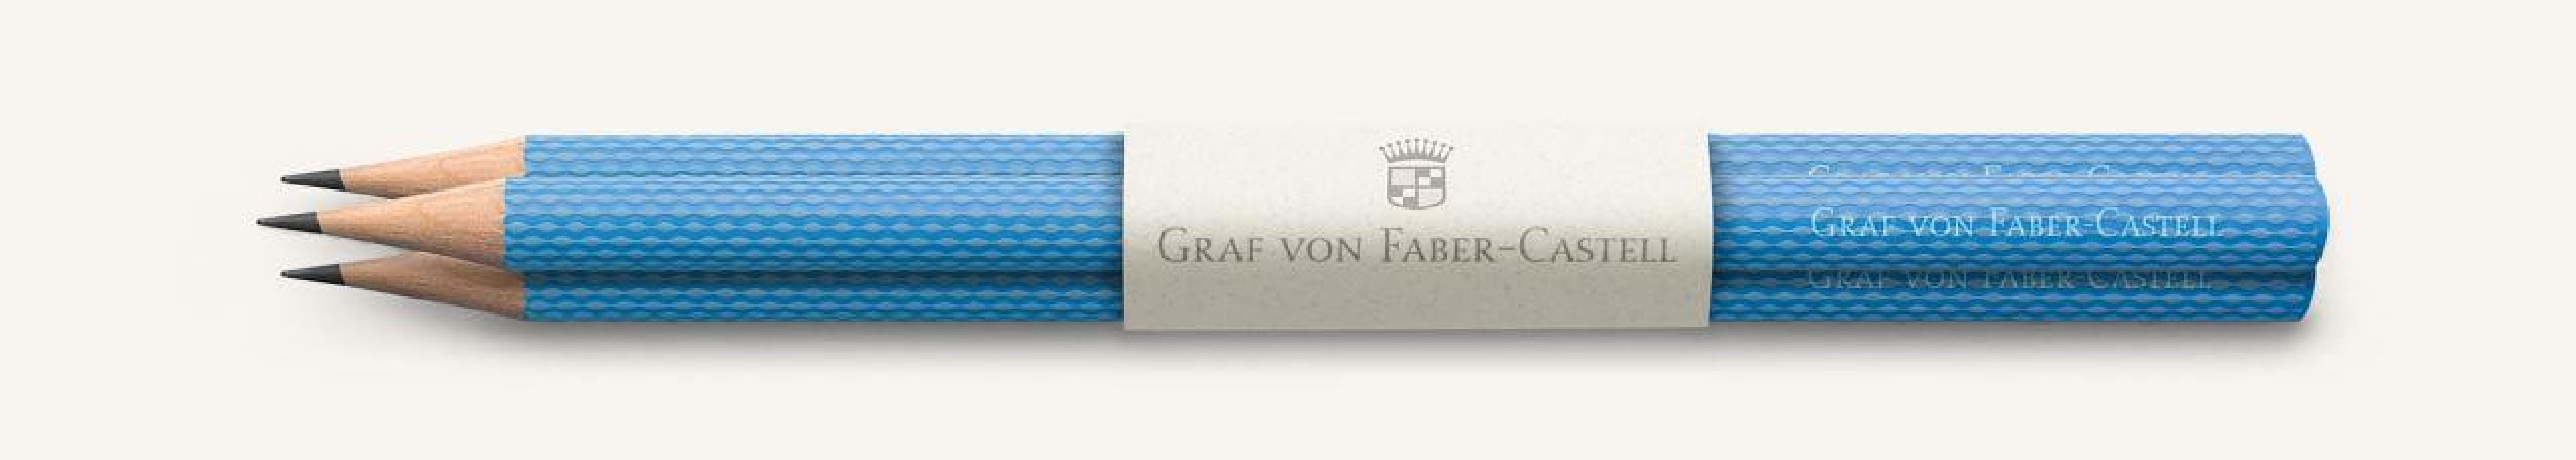 Graf Von Faber Castell, 3 graphite pencils Guilloche, Gulf Blue 118631